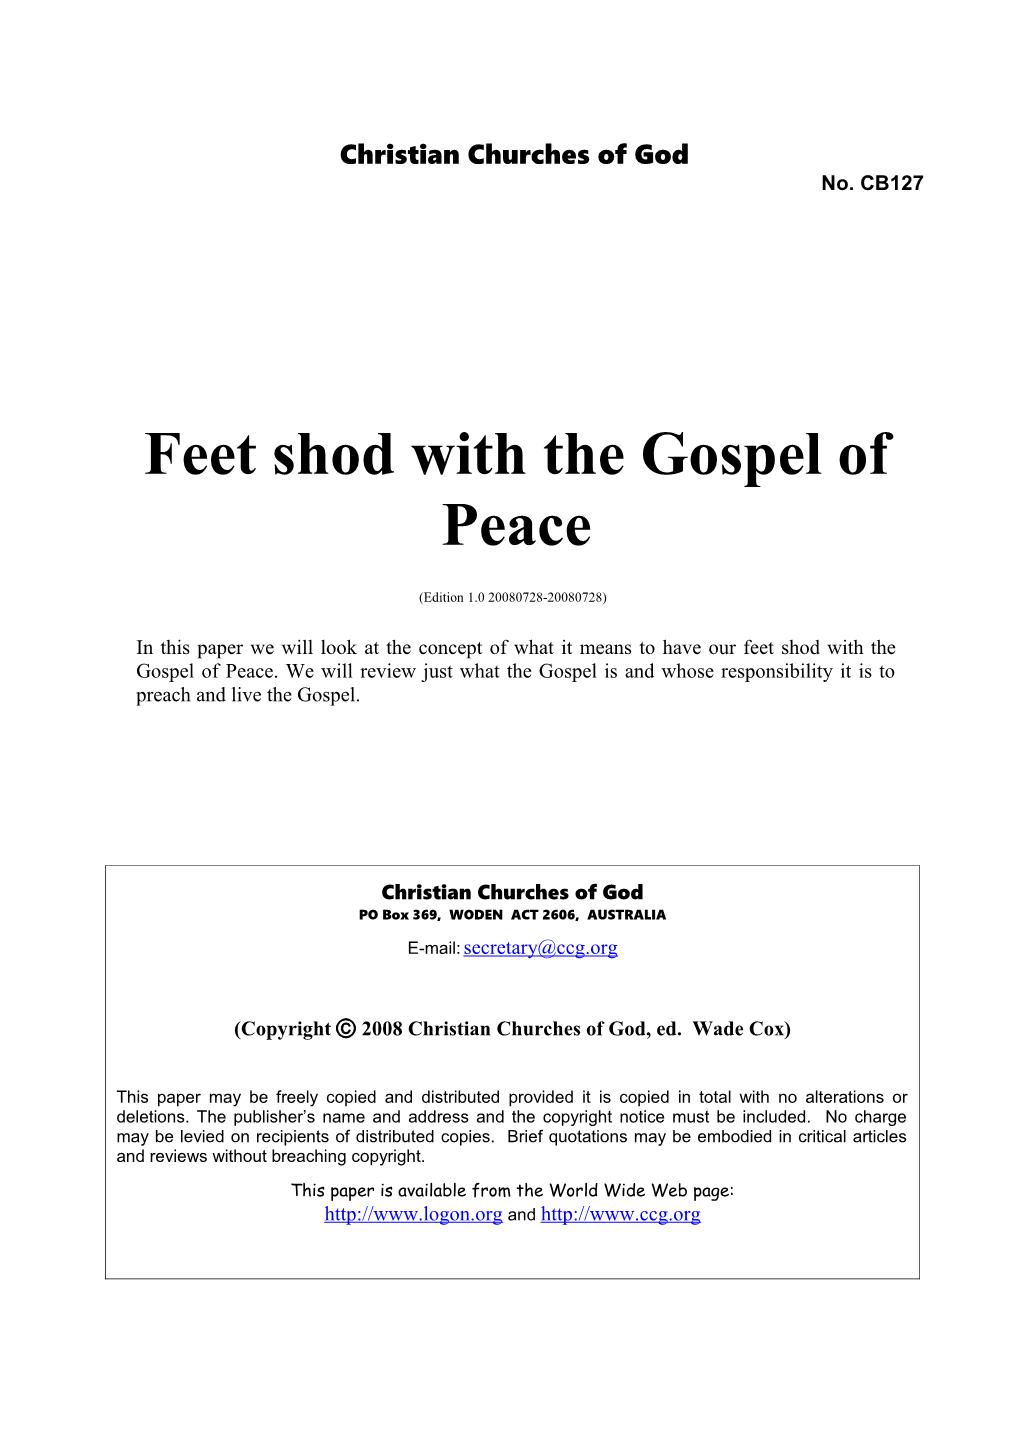 Feet Shod with the Gospel of Peace (No. CB127)